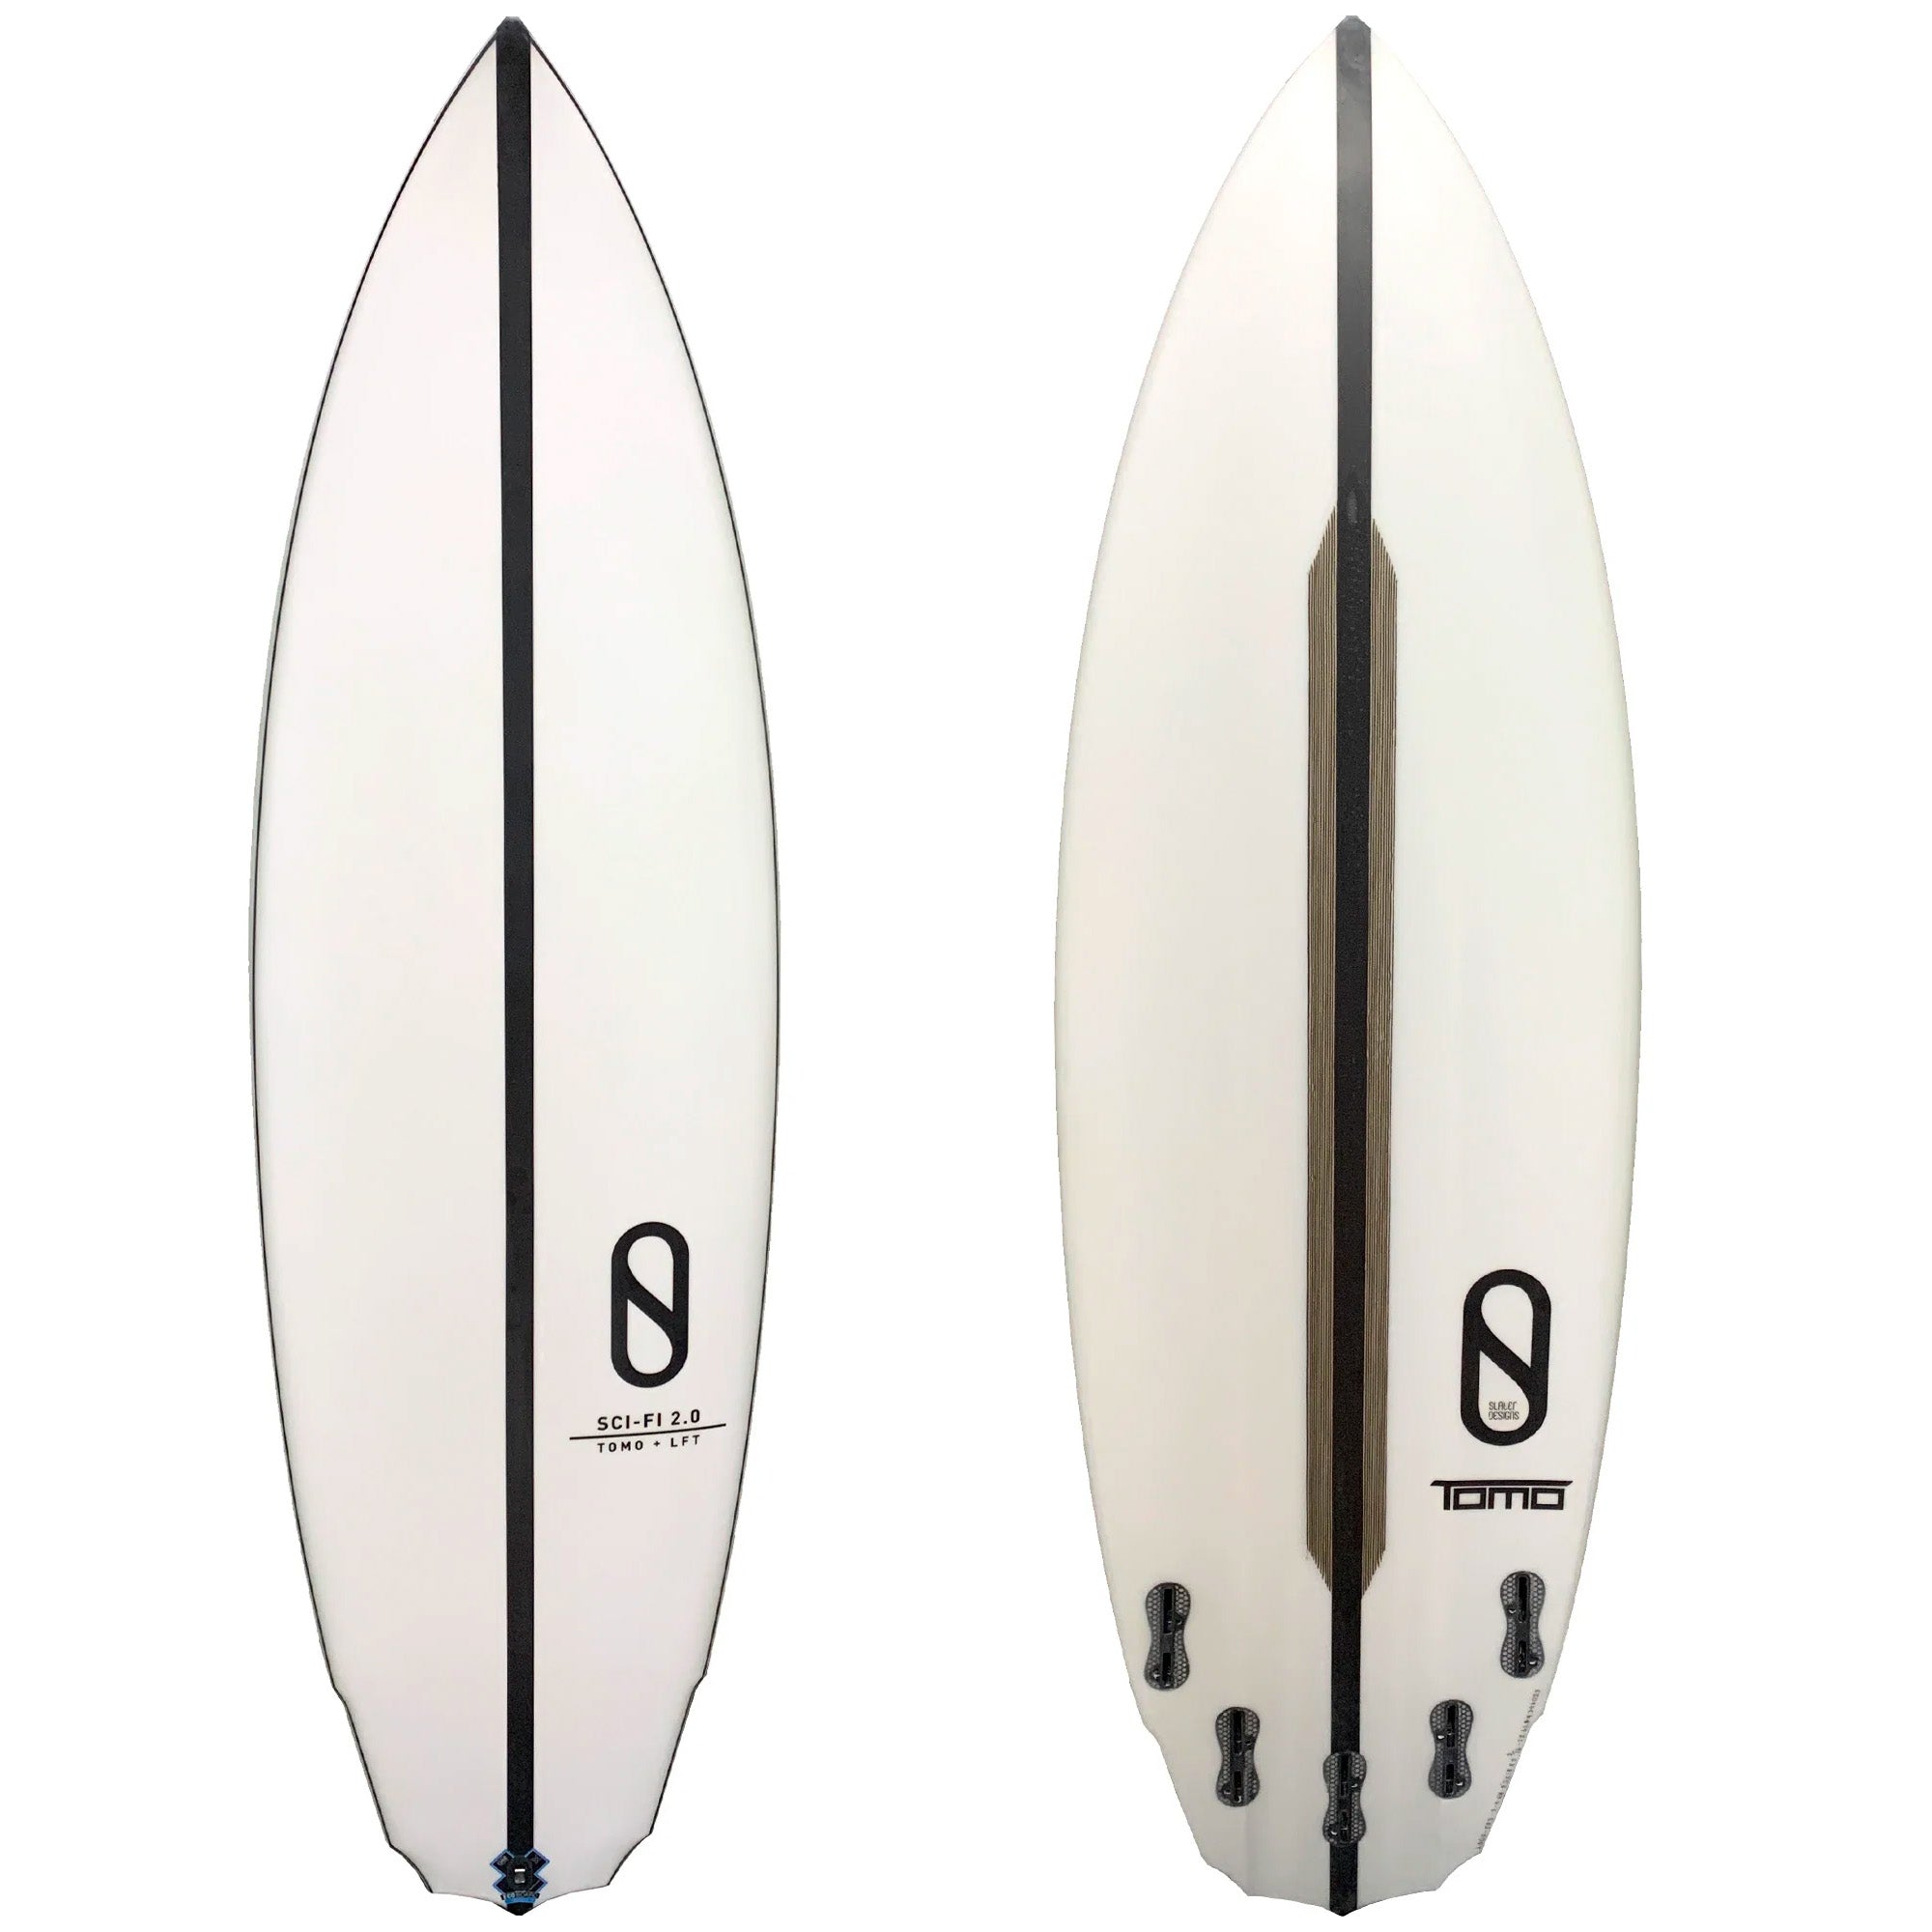 Firewire Sci-Fi 2.0 Slater Designs LFT Surfboard - FCS II